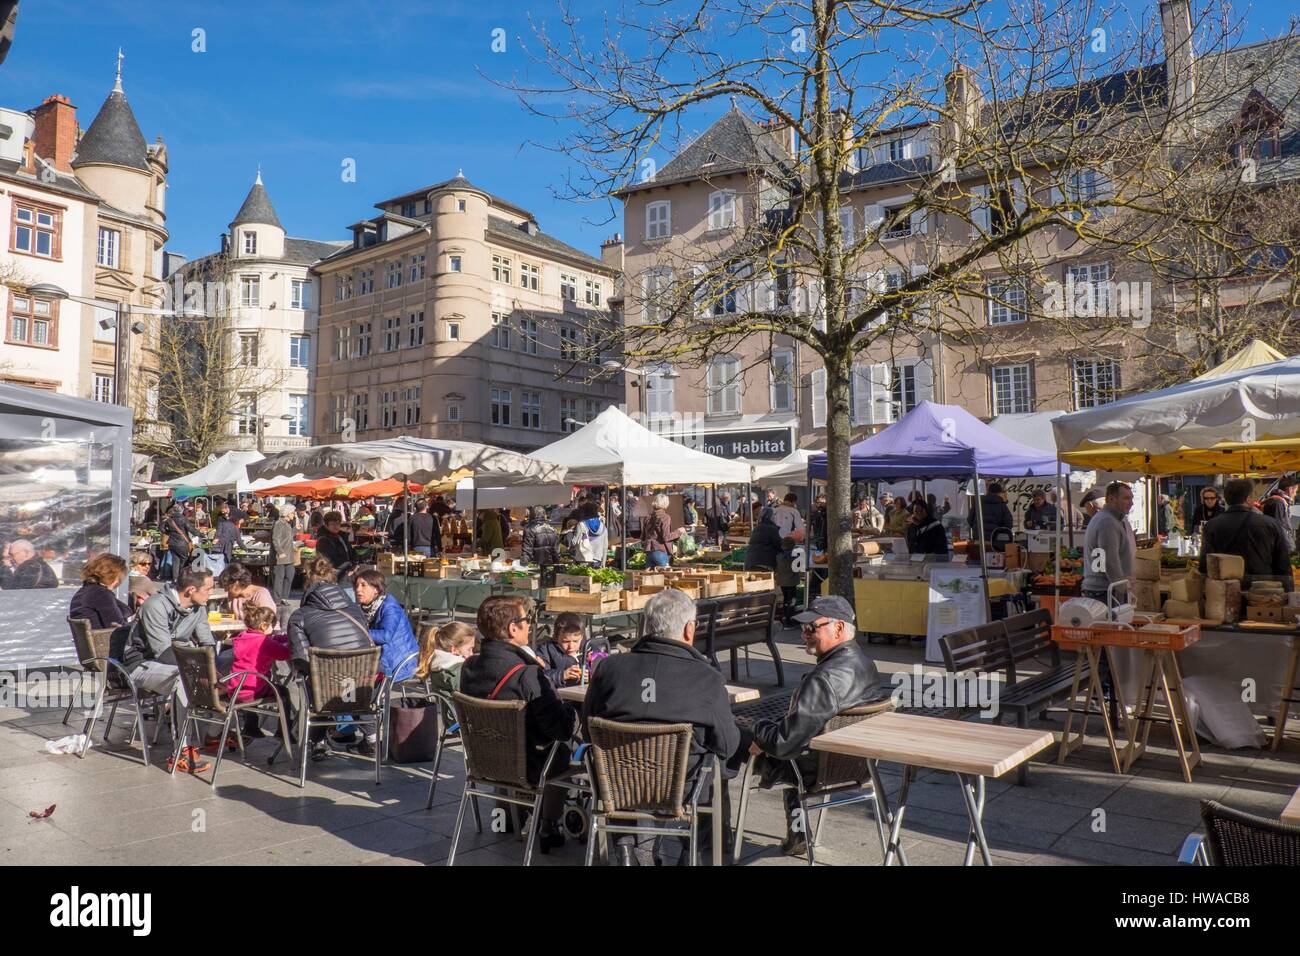 France, Aveyron, Rodez, Bourg square, market day Stock Photo